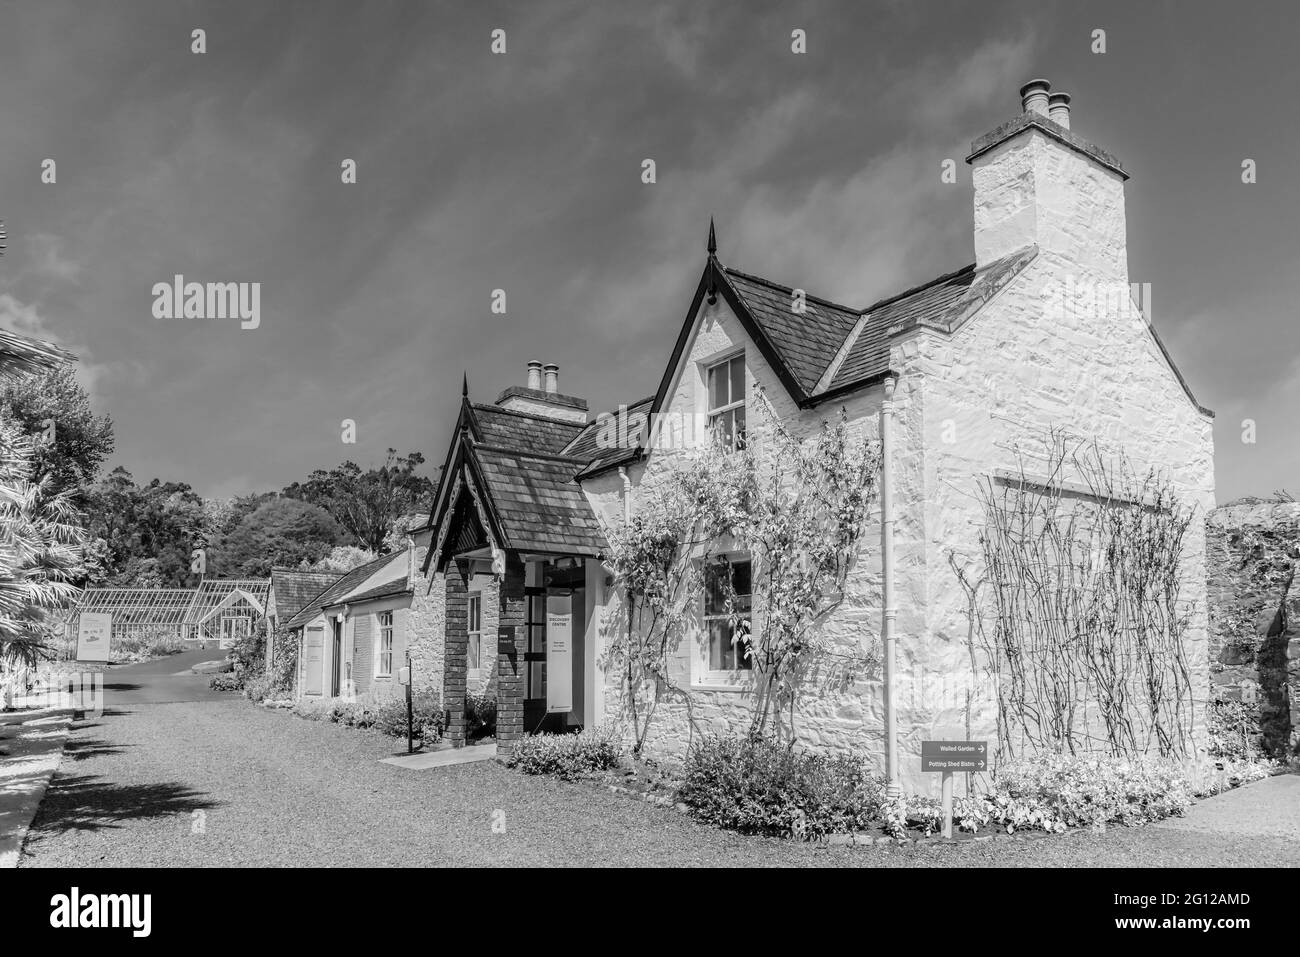 L'image est celle des cottages des jardins botaniques royaux de Port Logan, près de Stranraer, sur la péninsule Dumfries Galloway. Banque D'Images